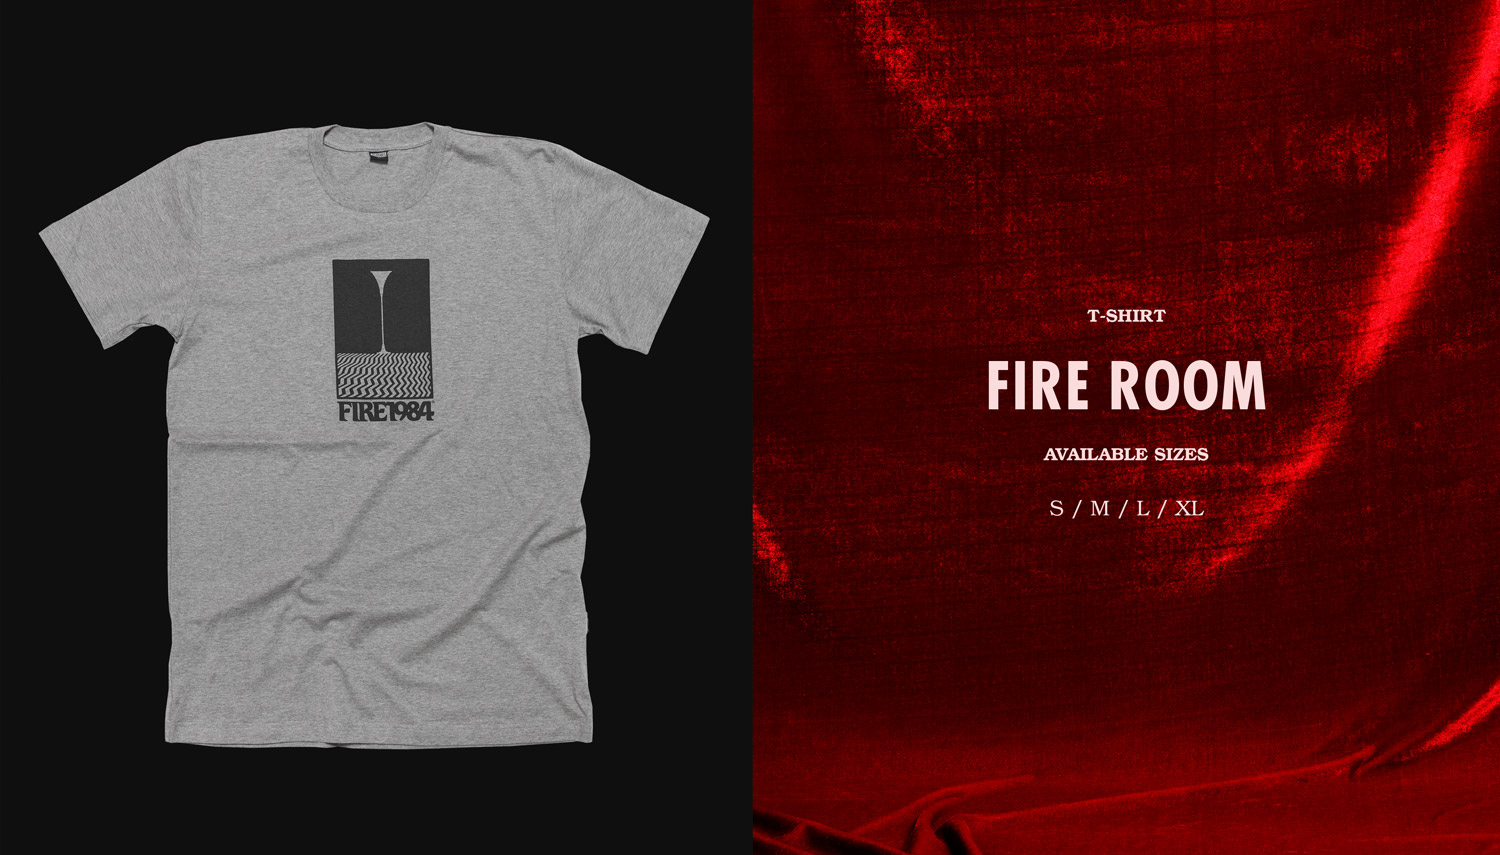 Fire1984 t-shirt Fire Room